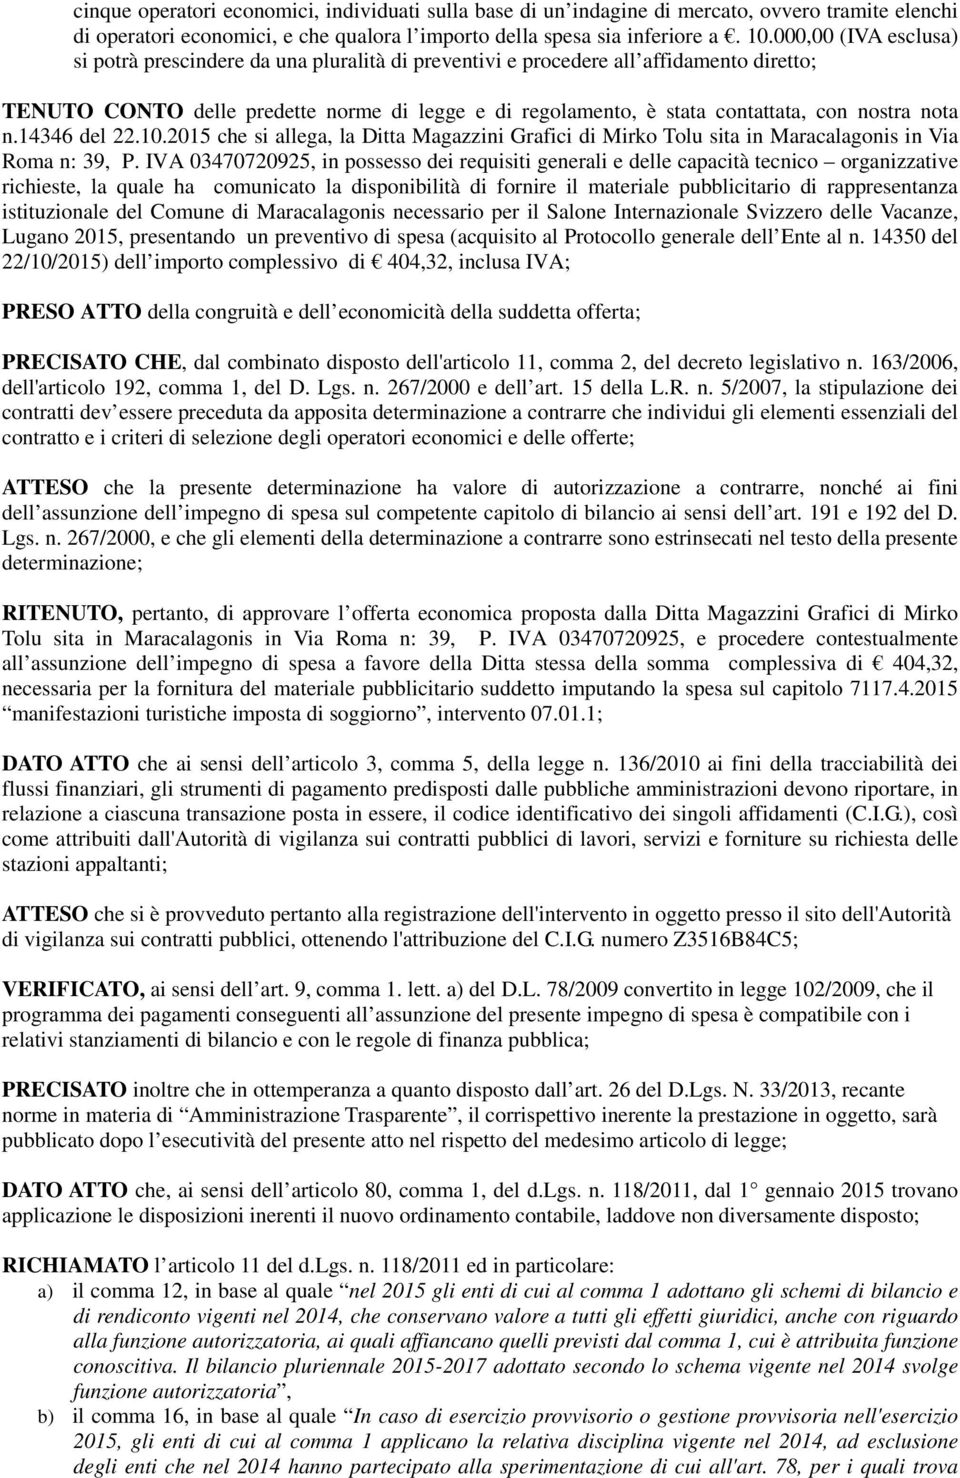 nostra nota n.14346 del 22.10.2015 che si allega, la Ditta Magazzini Grafici di Mirko Tolu sita in Maracalagonis in Via Roma n: 39, P.